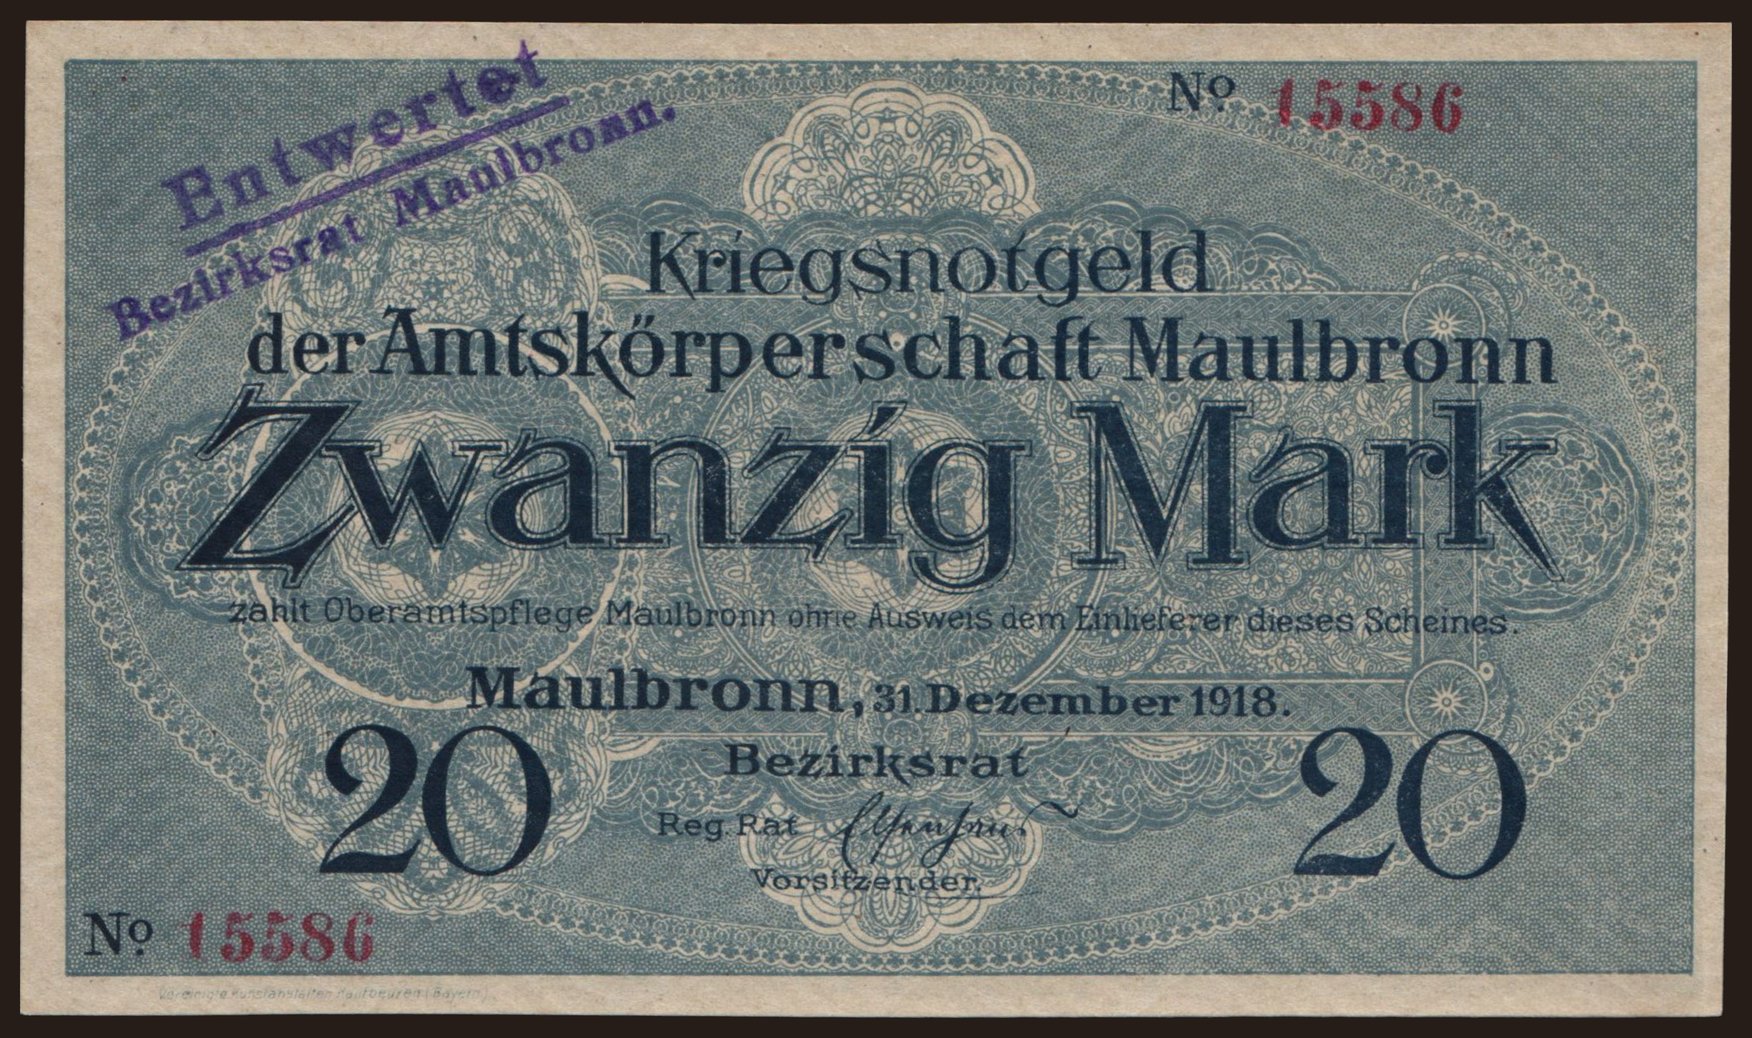 Maulbronn/ Amtskörperschaft, 20 Mark, 1918